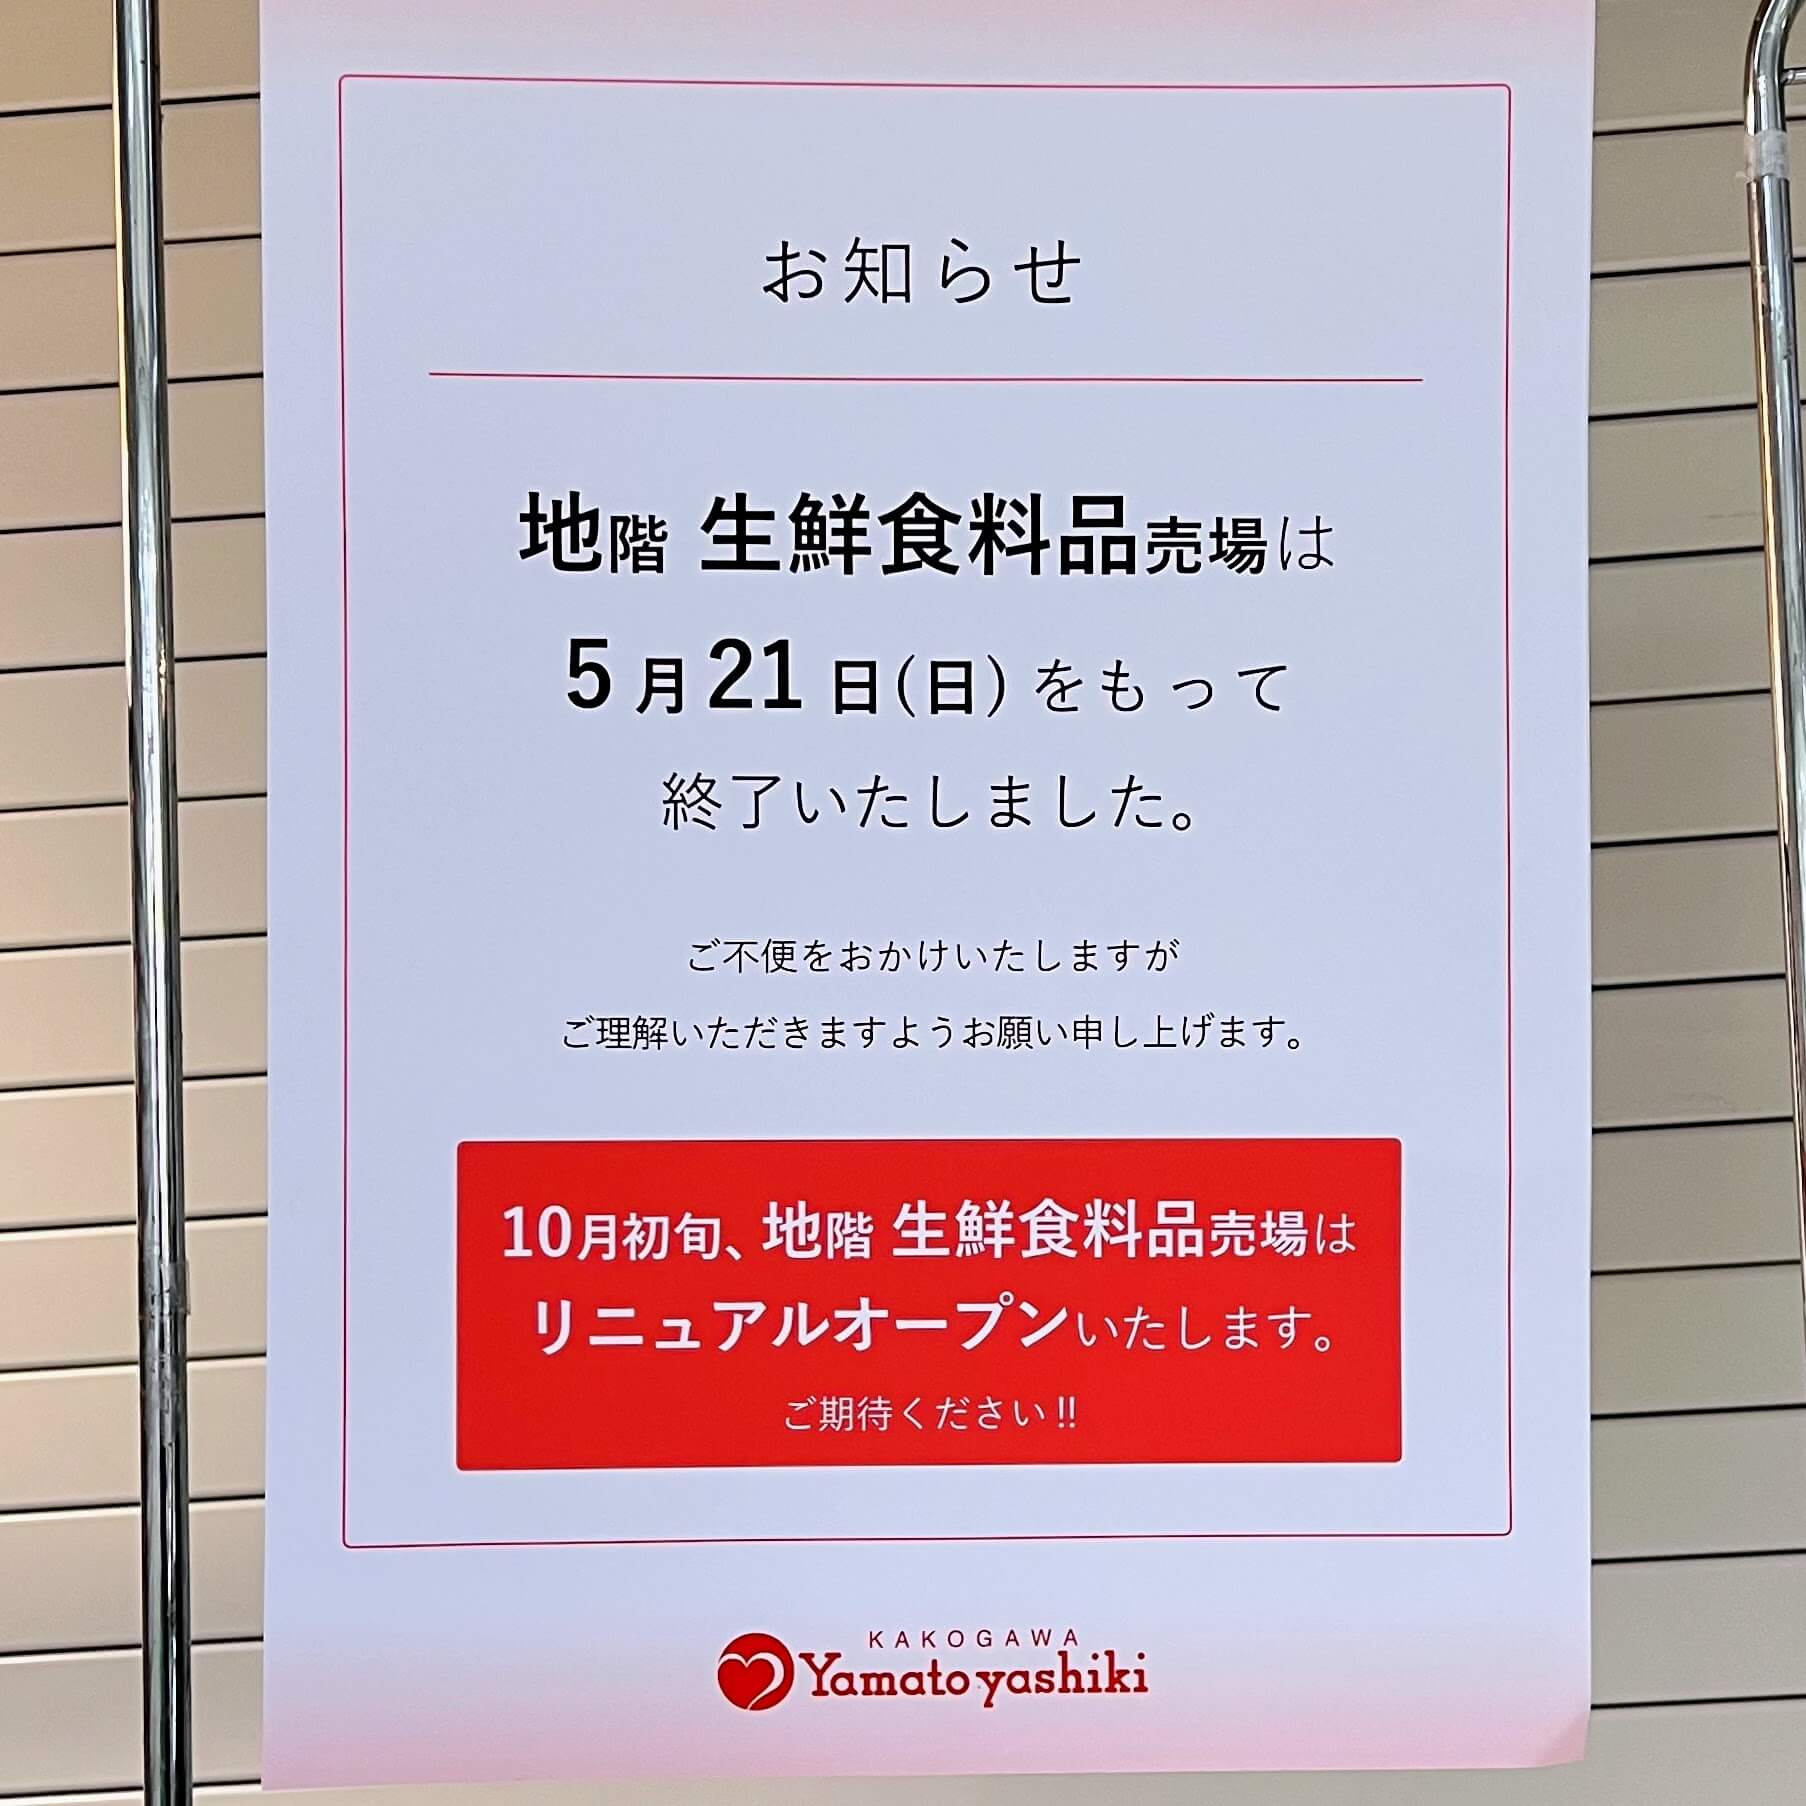 加古川ヤマトヤシキの地下1階生鮮食料品売場が終了のお知らせ